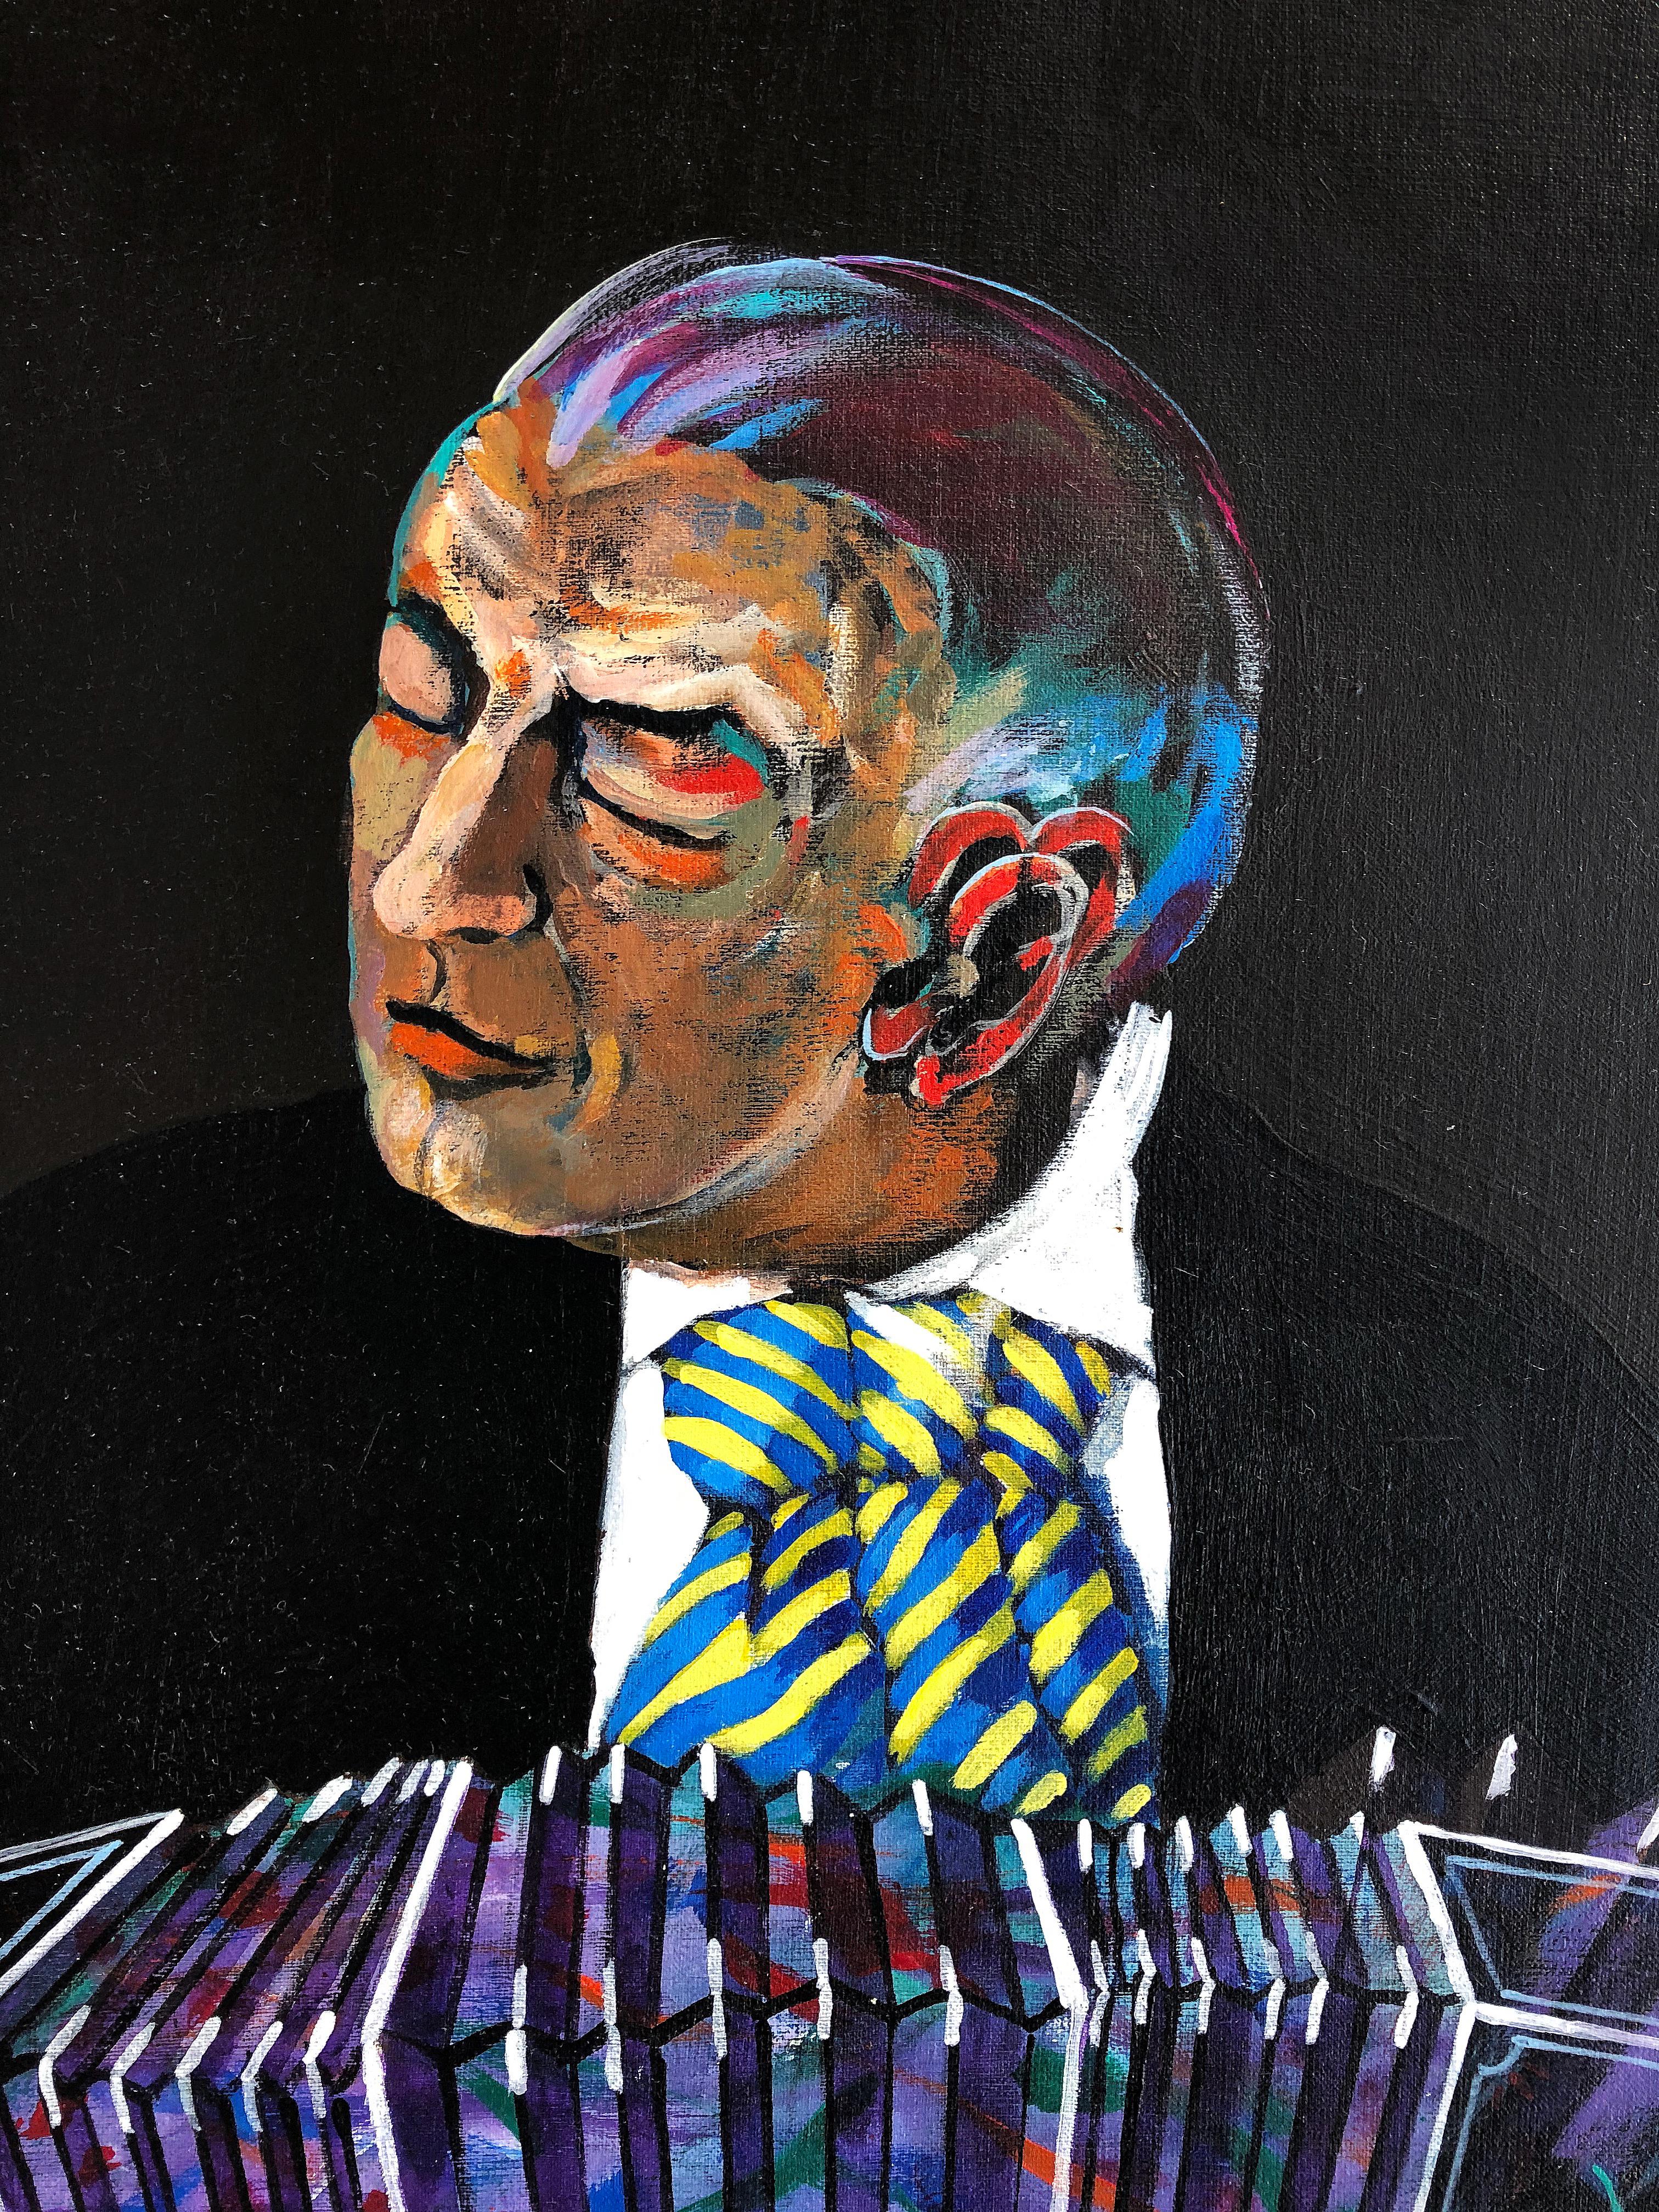 Jose Maria Ansalone Homme à l'accordéon peinture sur toile

Nous proposons à la vente une exquise peinture acrylique sur toile représentant un homme jouant un tango, réalisée par le célèbre artiste argentin Jose Mario Ansalone et intitulée 